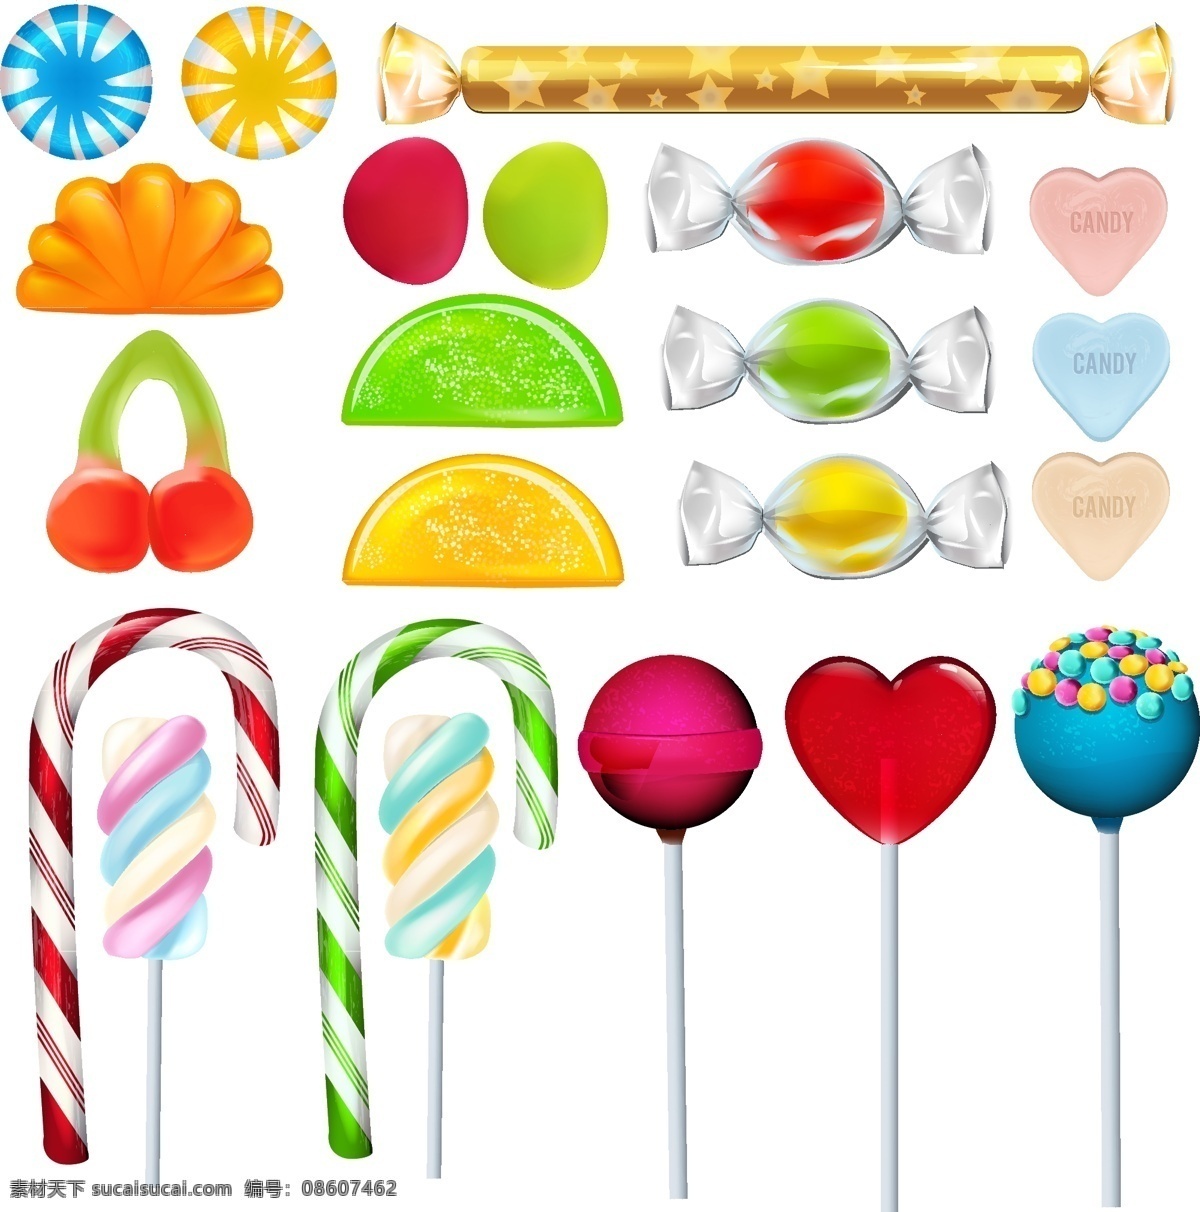 可爱 缤纷 糖果 矢量 棒棒糖 风车 心形糖果 透明糖果 可爱缤纷糖果 标志图标 其他图标